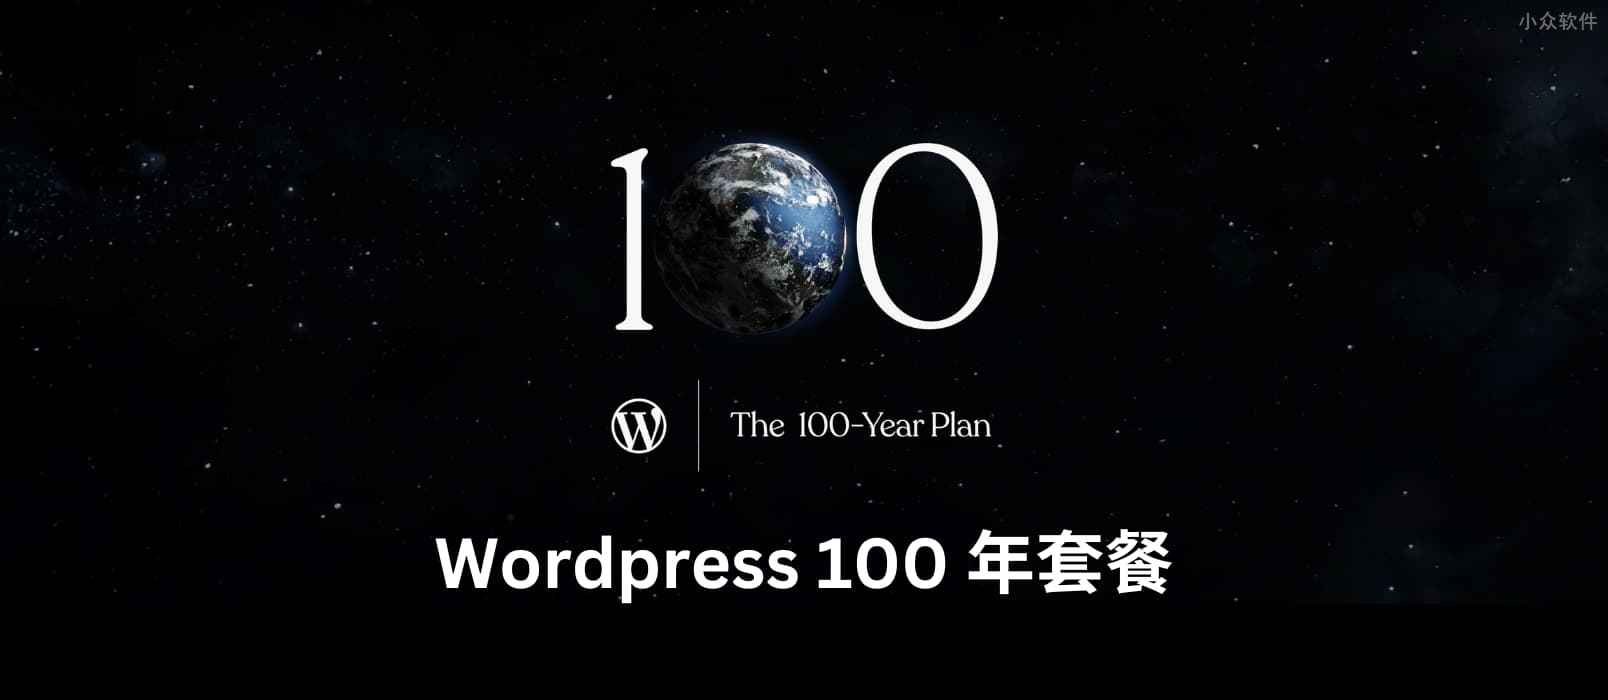 一次一世纪，WordPress 开始提供 100 年套餐